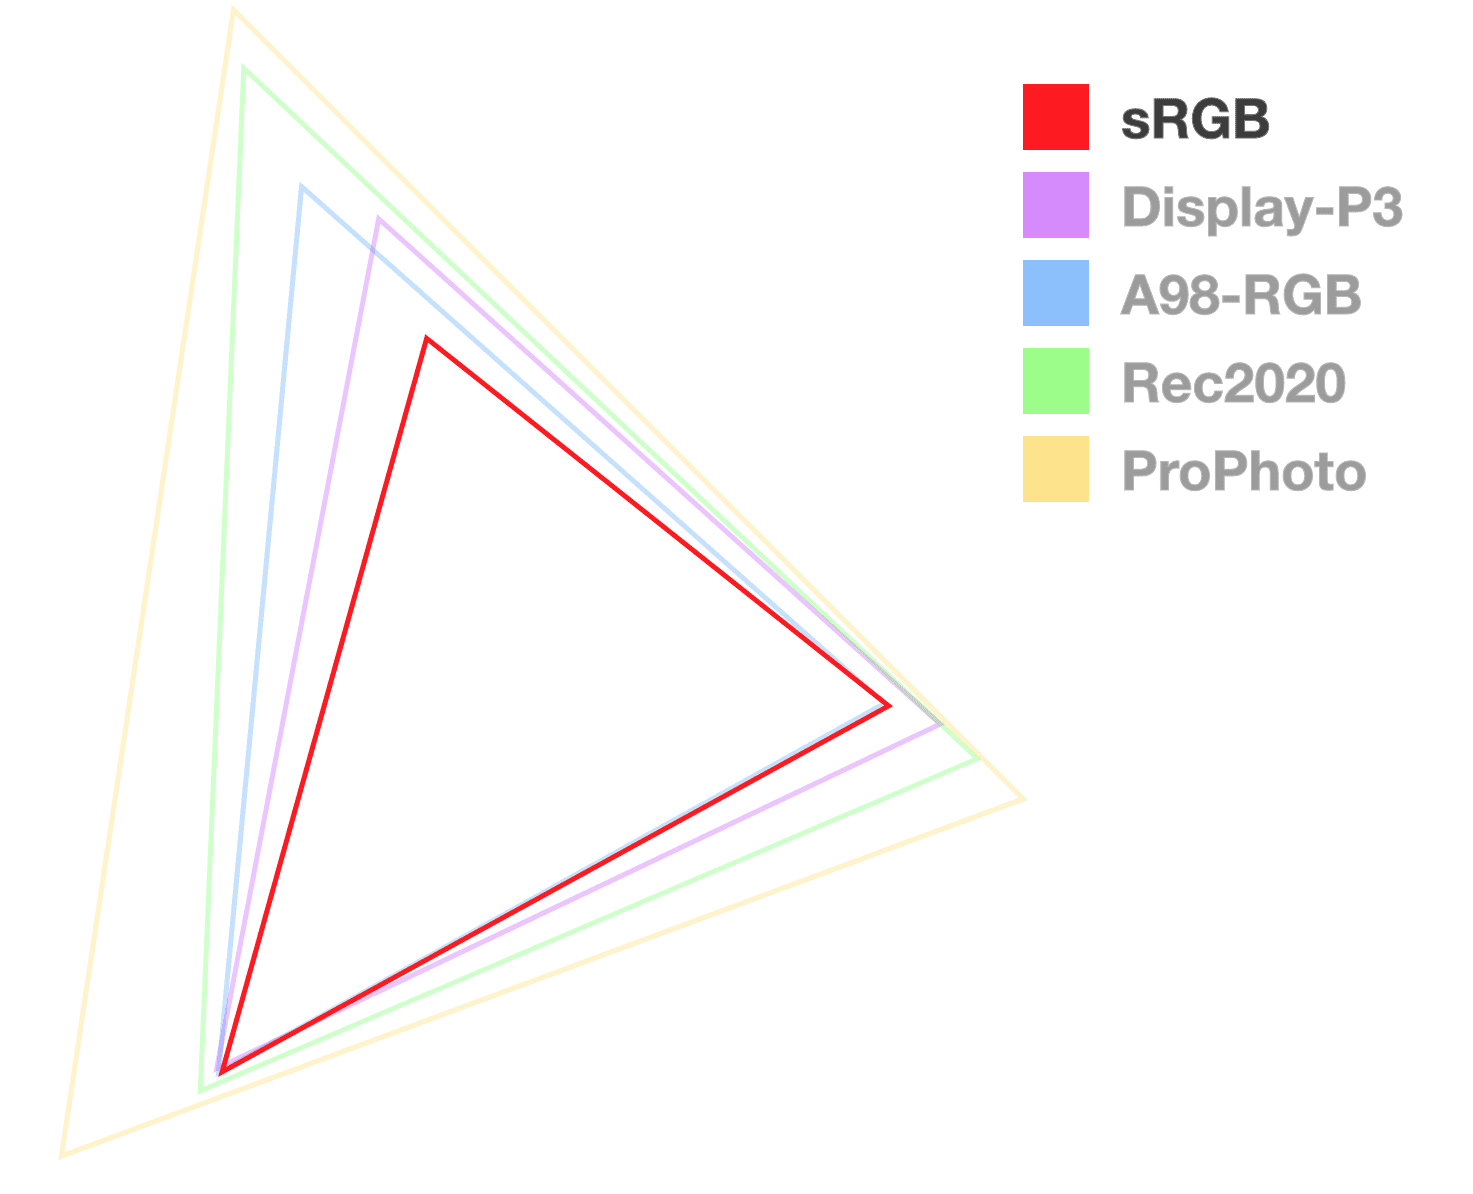 Das sRGB-Dreieck ist das einzige vollständig undurchsichtige Dreieck, um die Größe der Farbskala zu visualisieren.